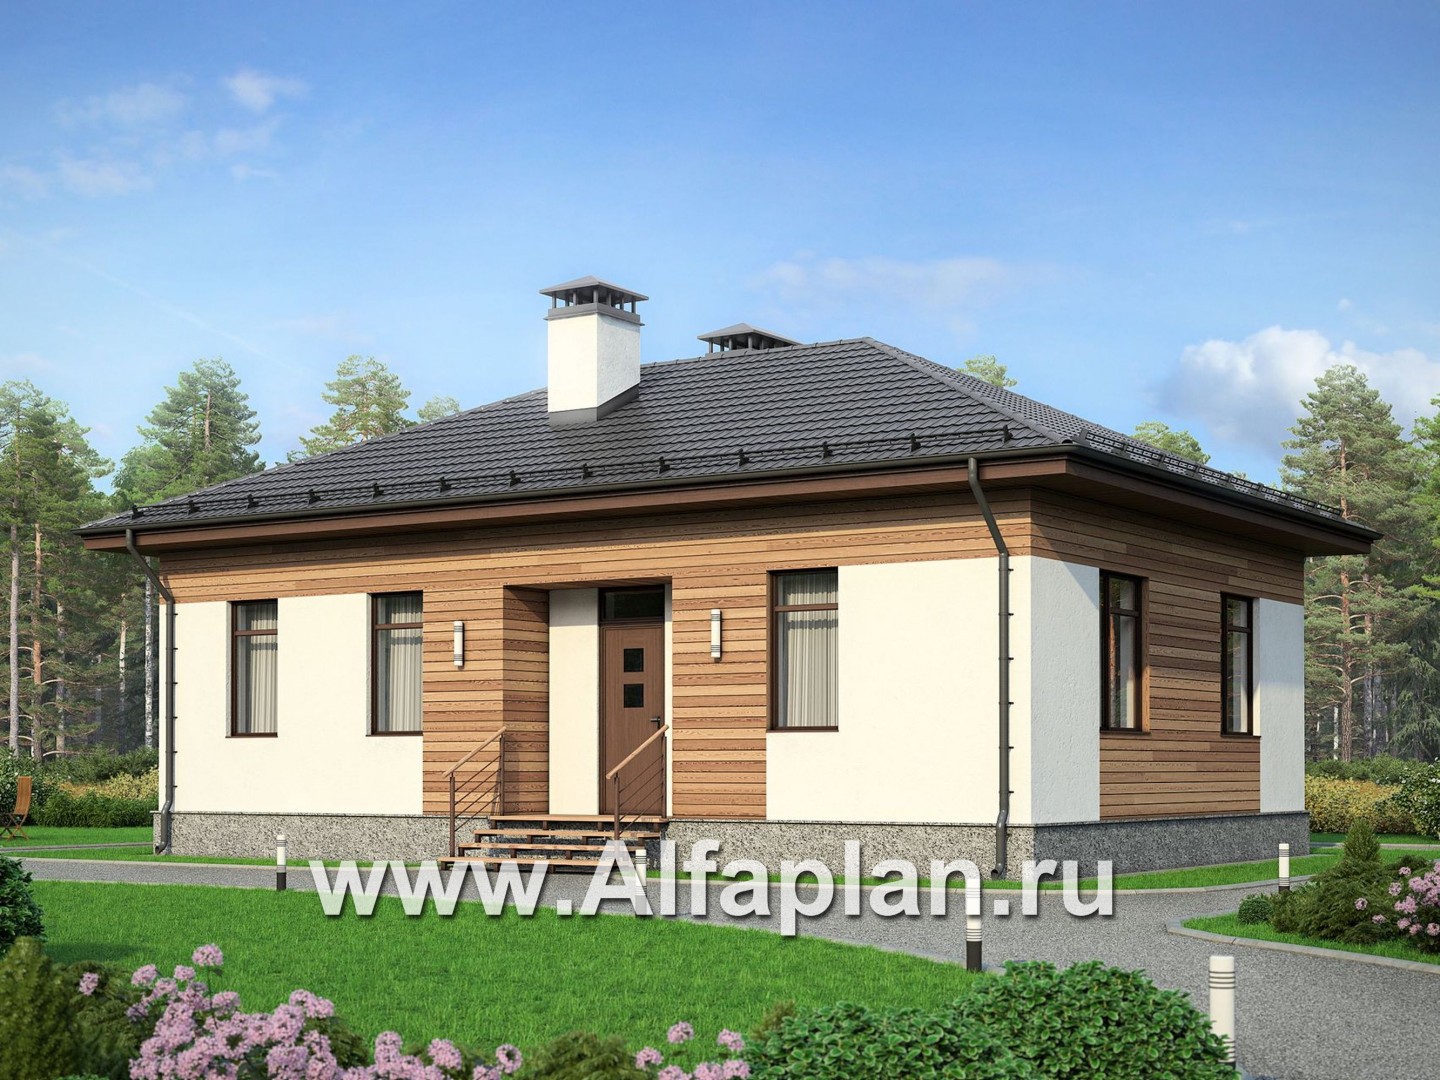 Проект простого одноэтажного дома, дача для небольшой семьи, 2 спальни, в современном стиле - основное изображение